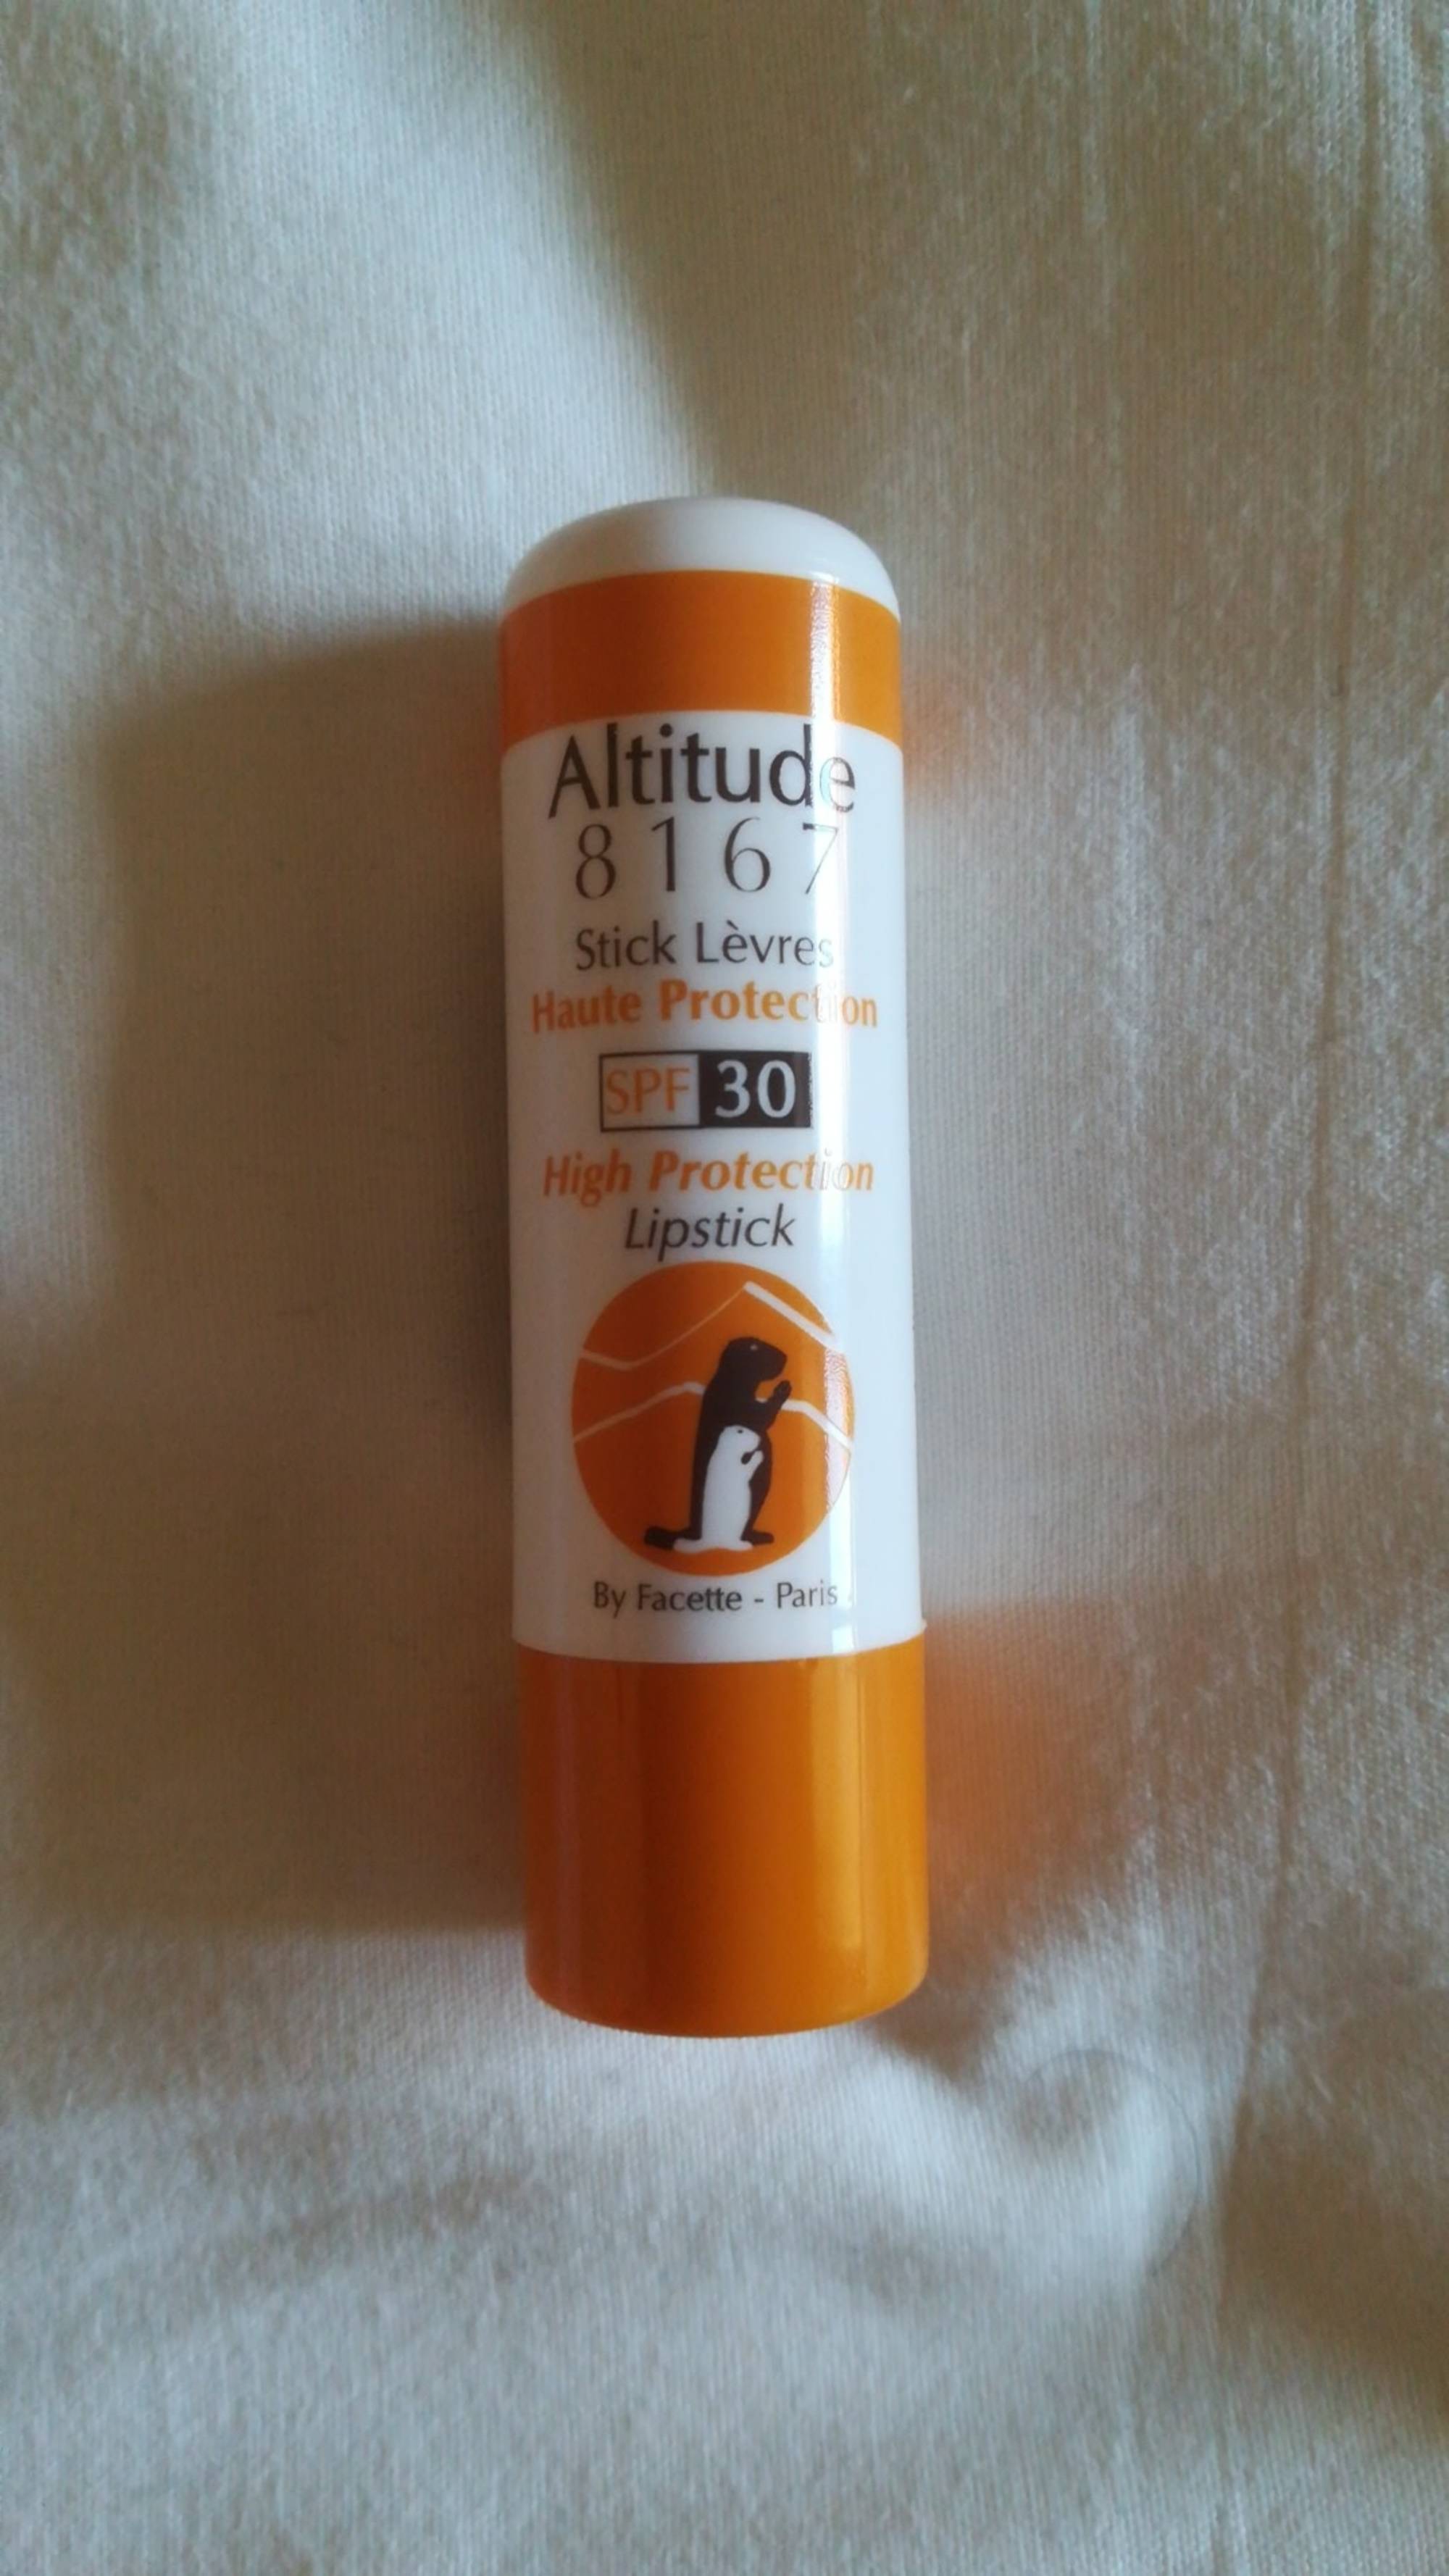 ALTITUDE 8167 - Stick lèvres haute protection SPF 30